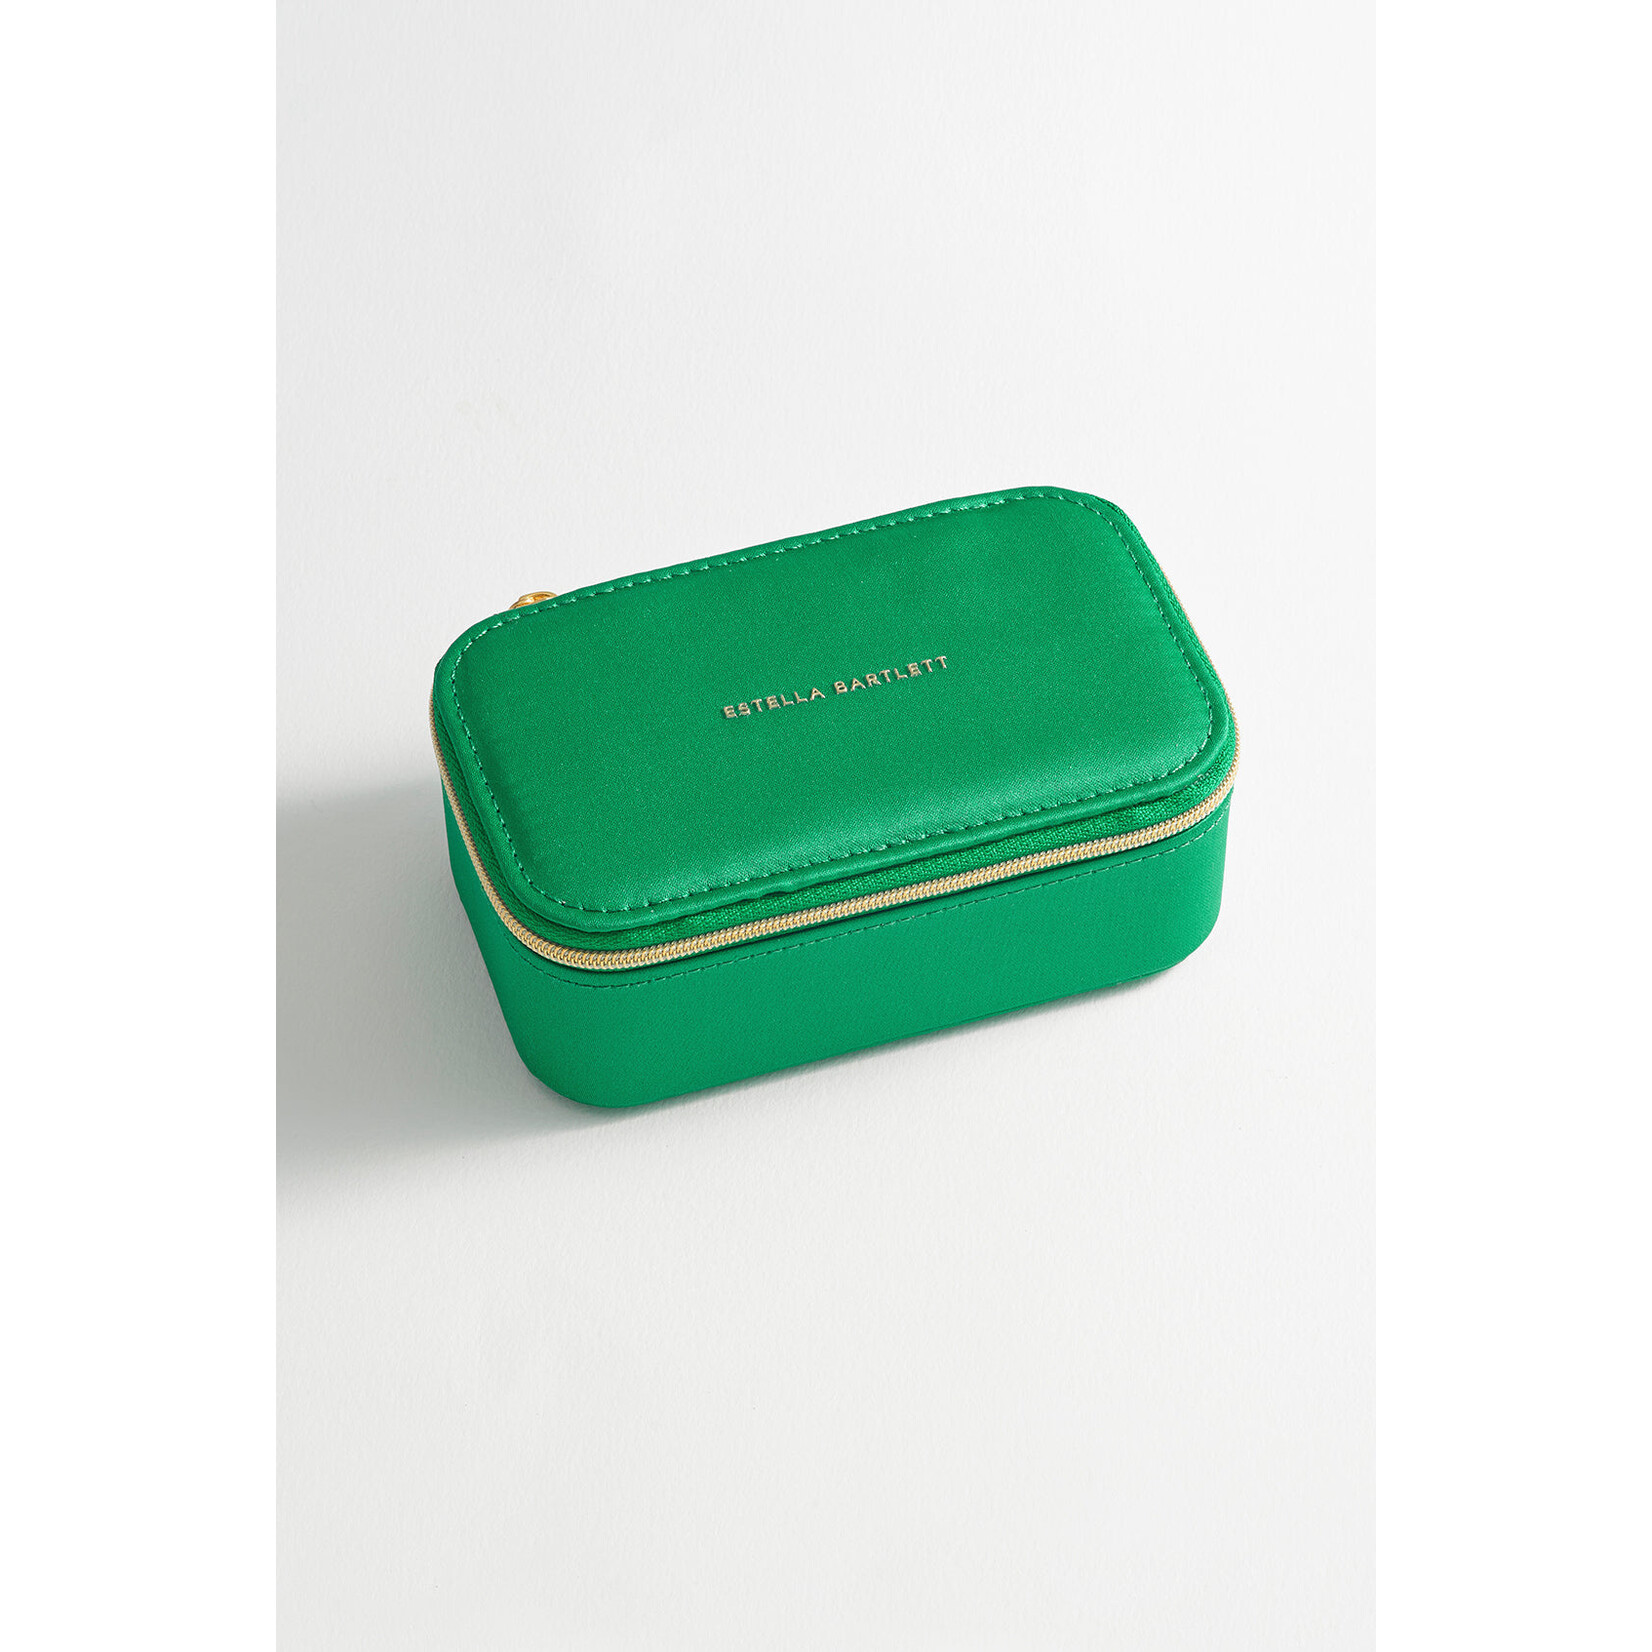 Estella Bartlett Ltd. Estella Bartlett Mini Jewelry Box - Contrast Satin Green